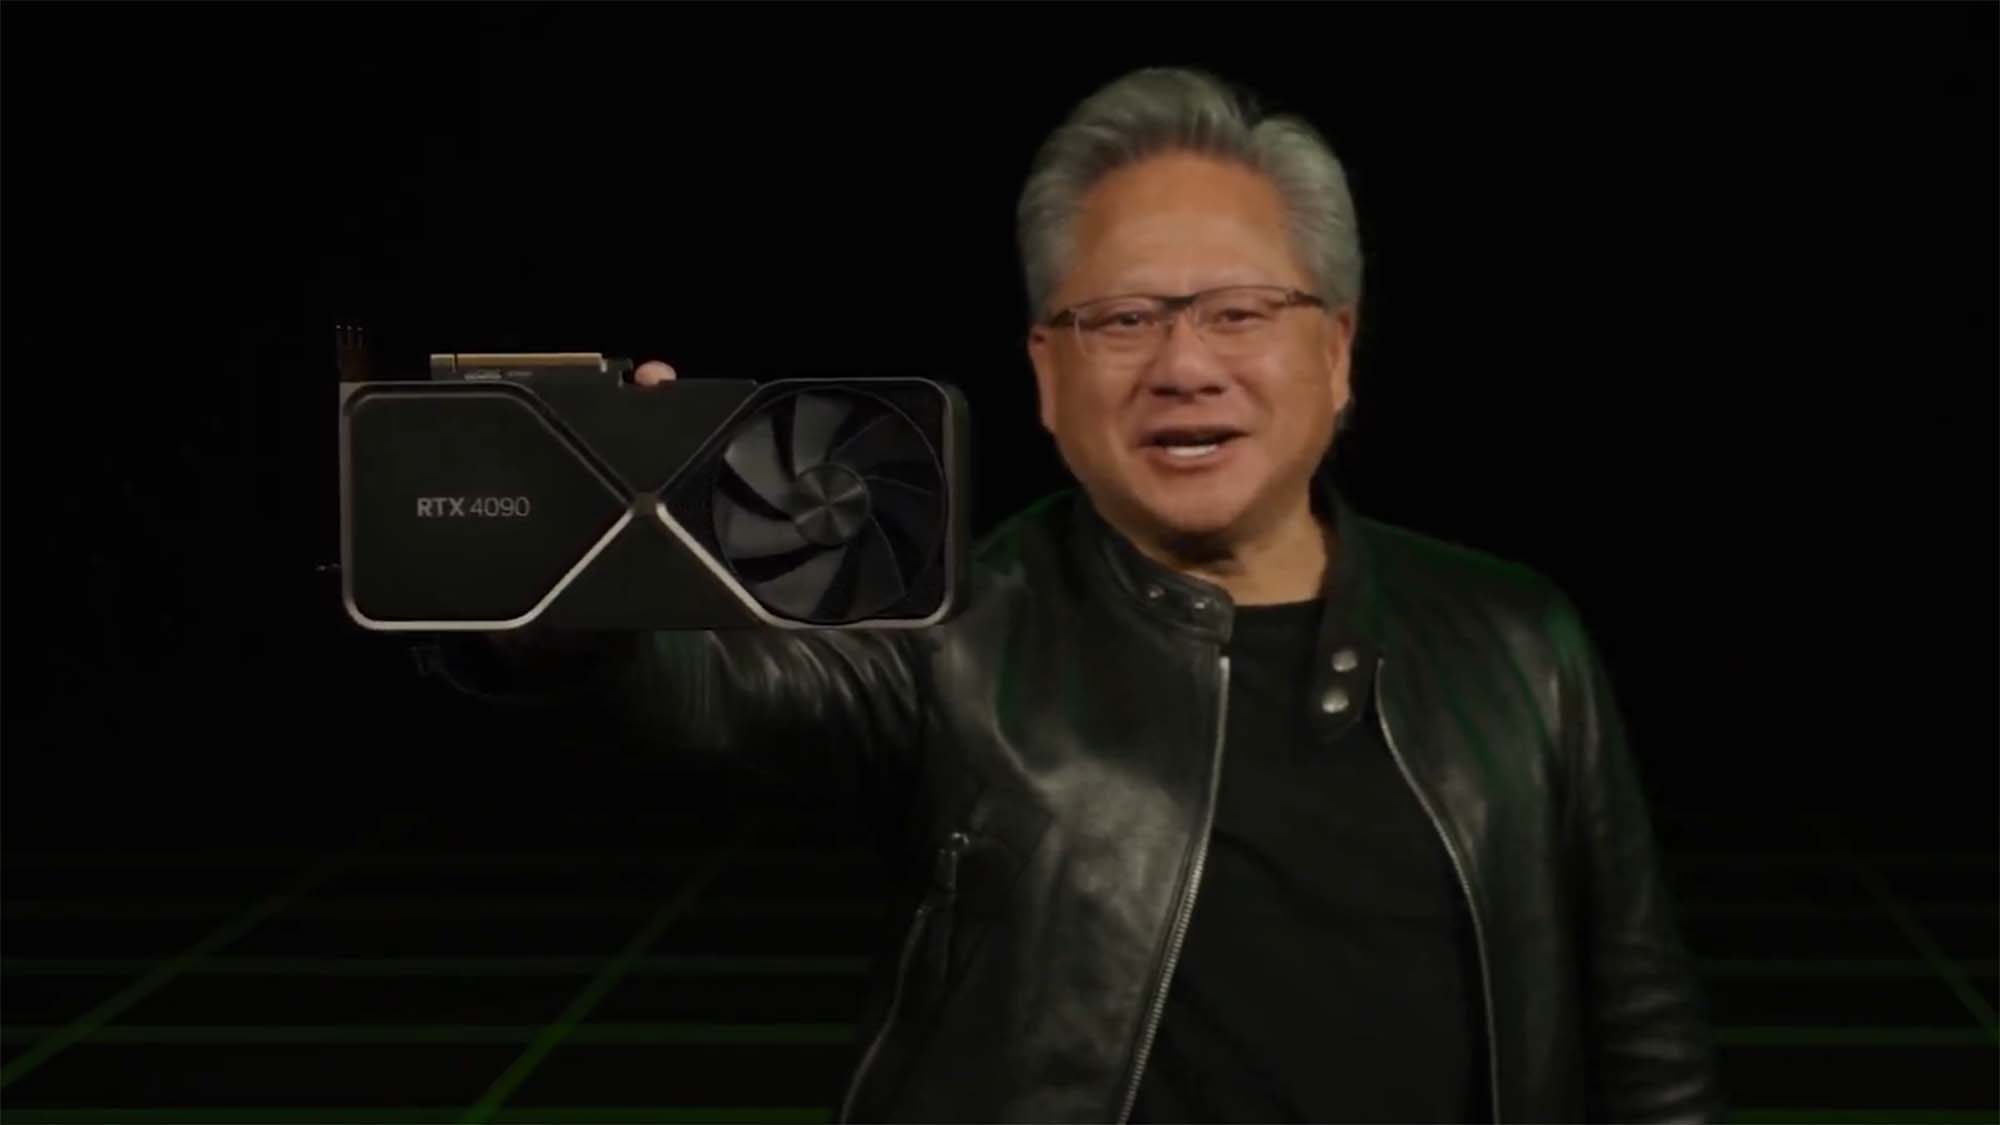 Nvidia Генеральный директор Дженсен Хуан с RTX 4090